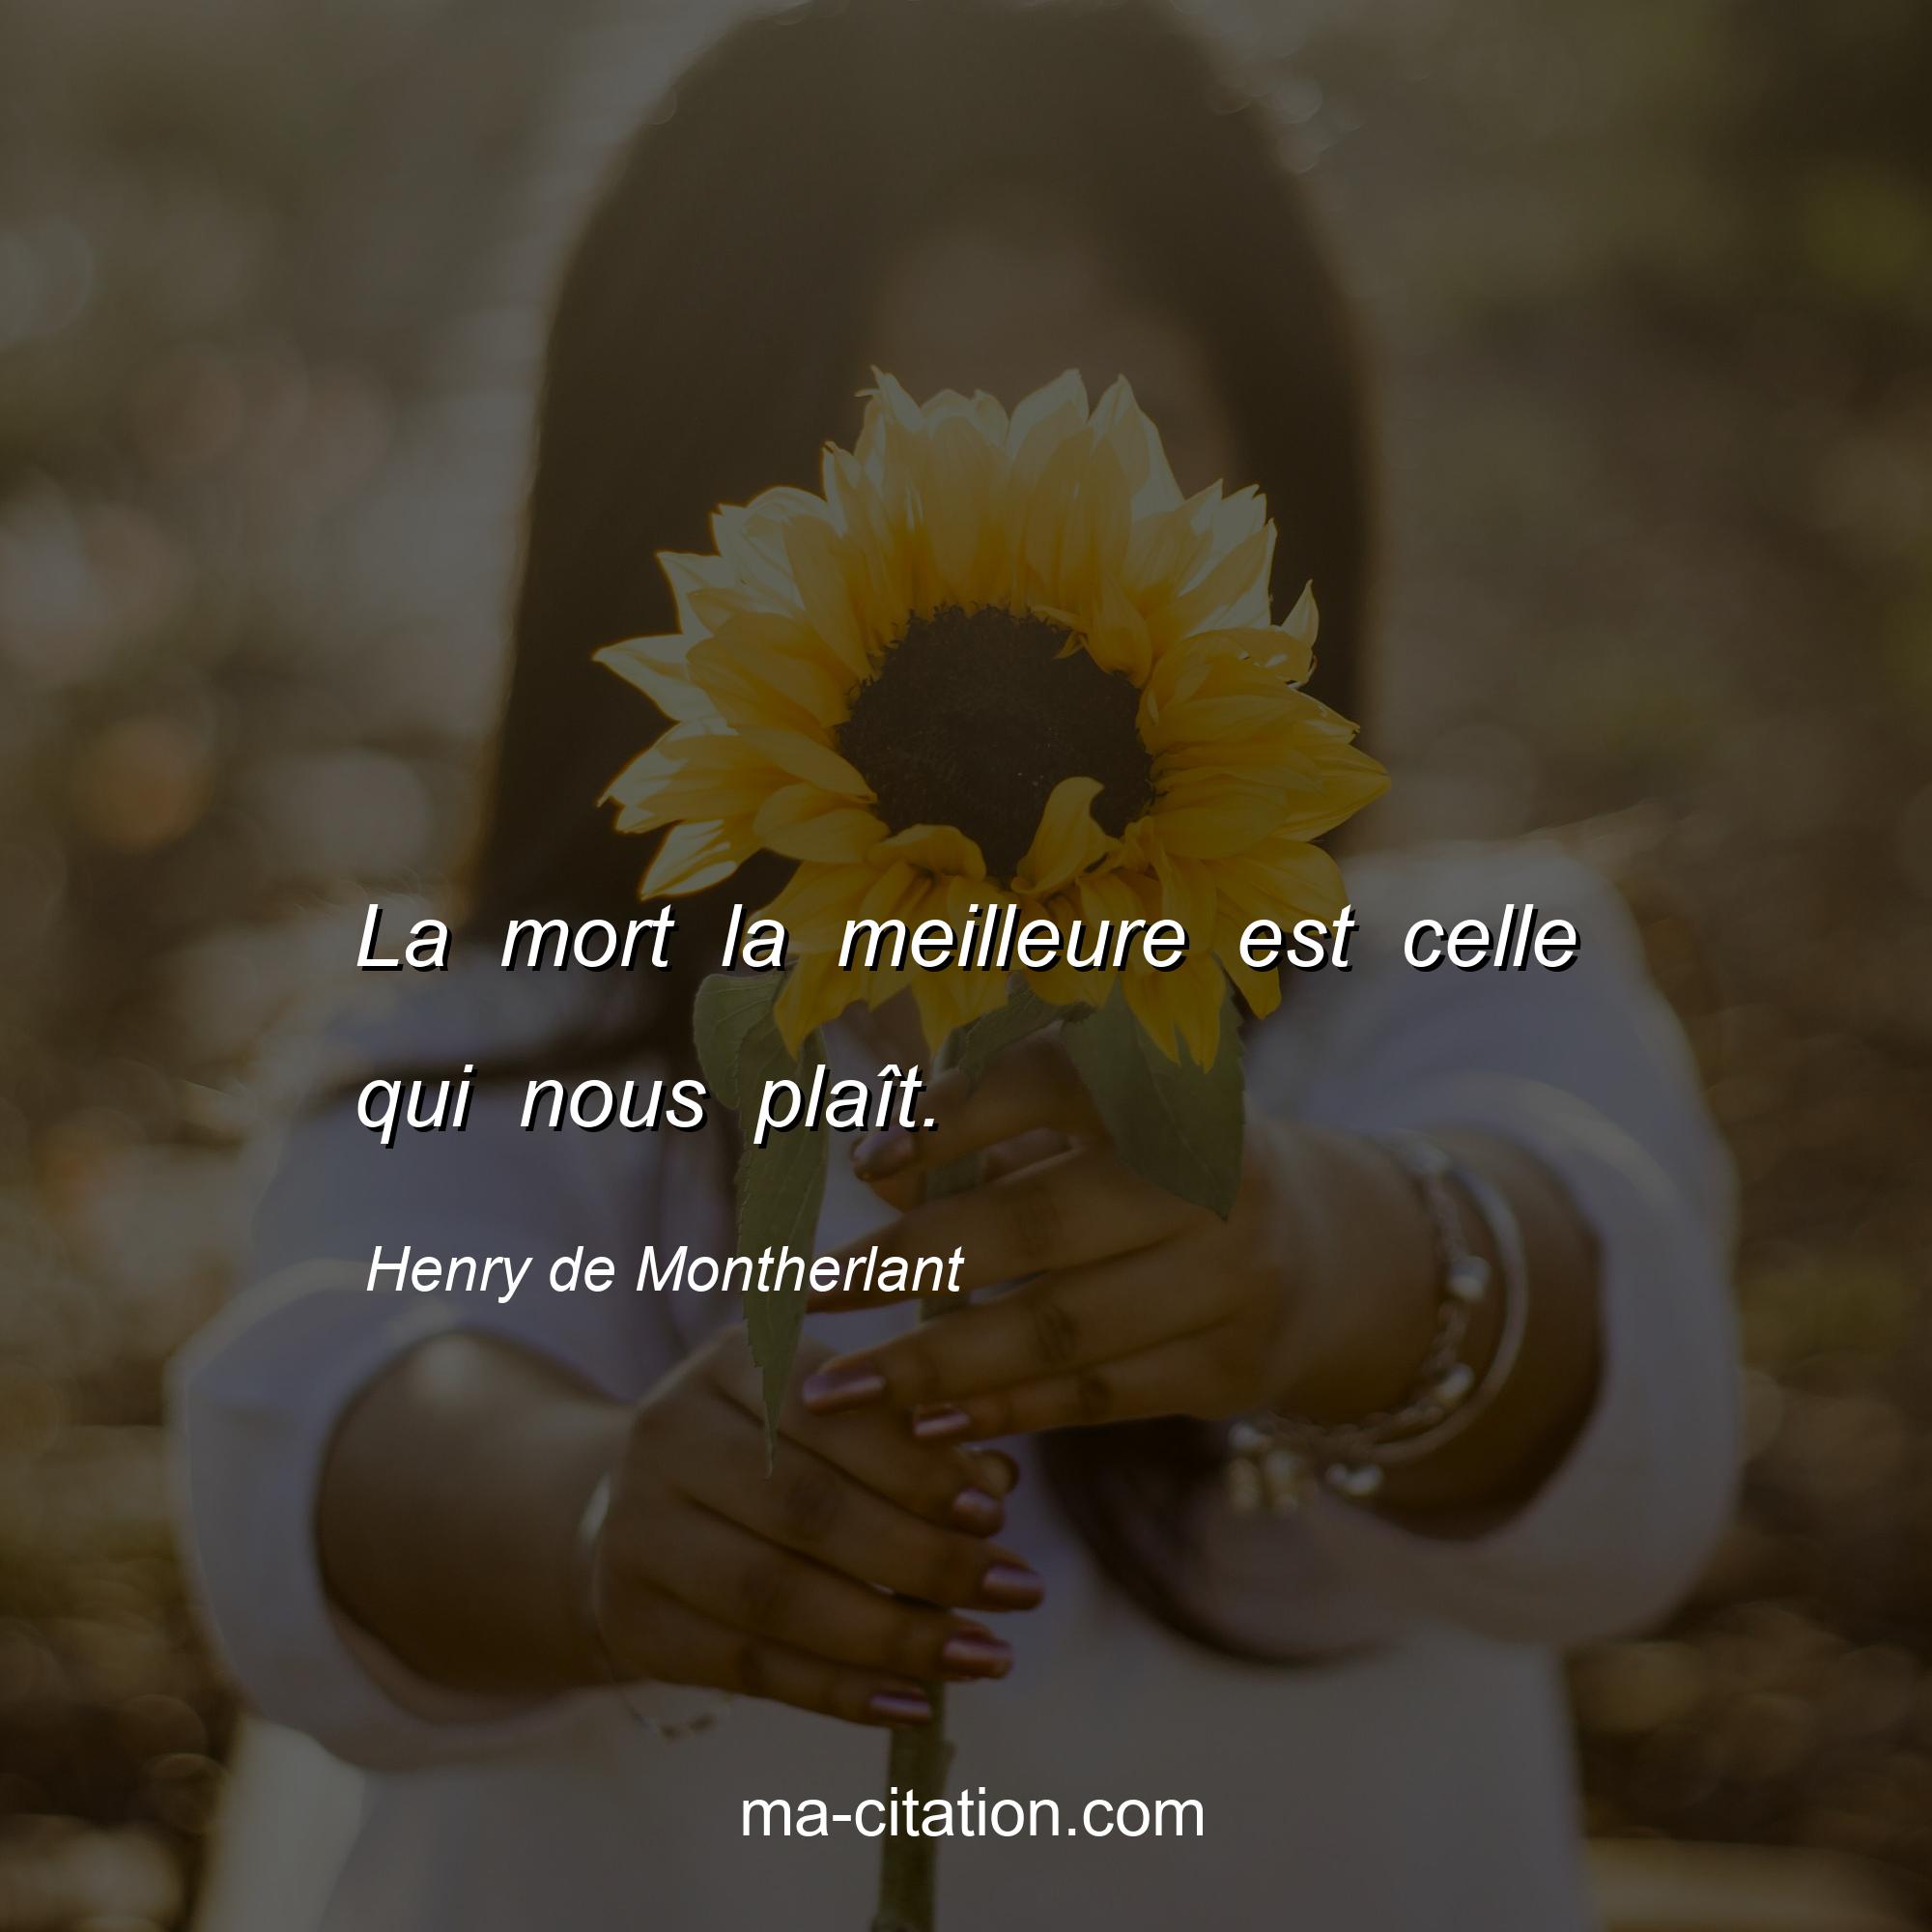 Henry de Montherlant : La mort la meilleure est celle qui nous plaît.